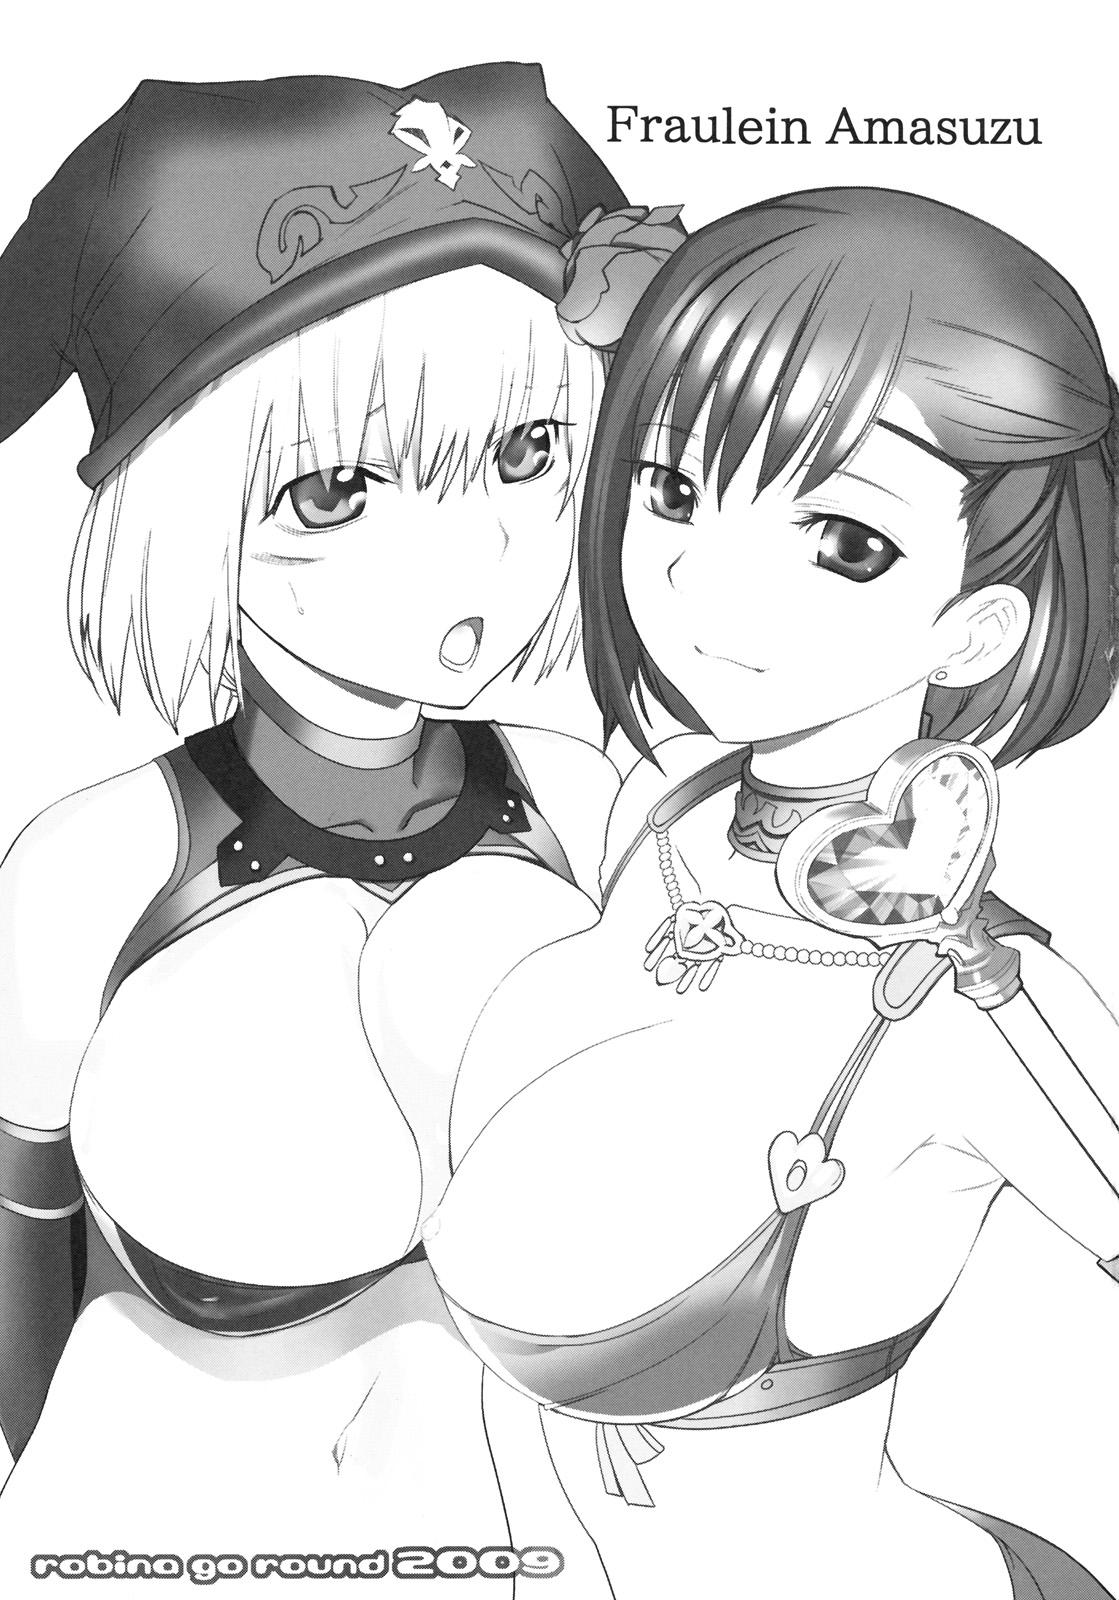 Ghetto Fraulein Amasuzu - Final fantasy xi Gay Anal - Page 2